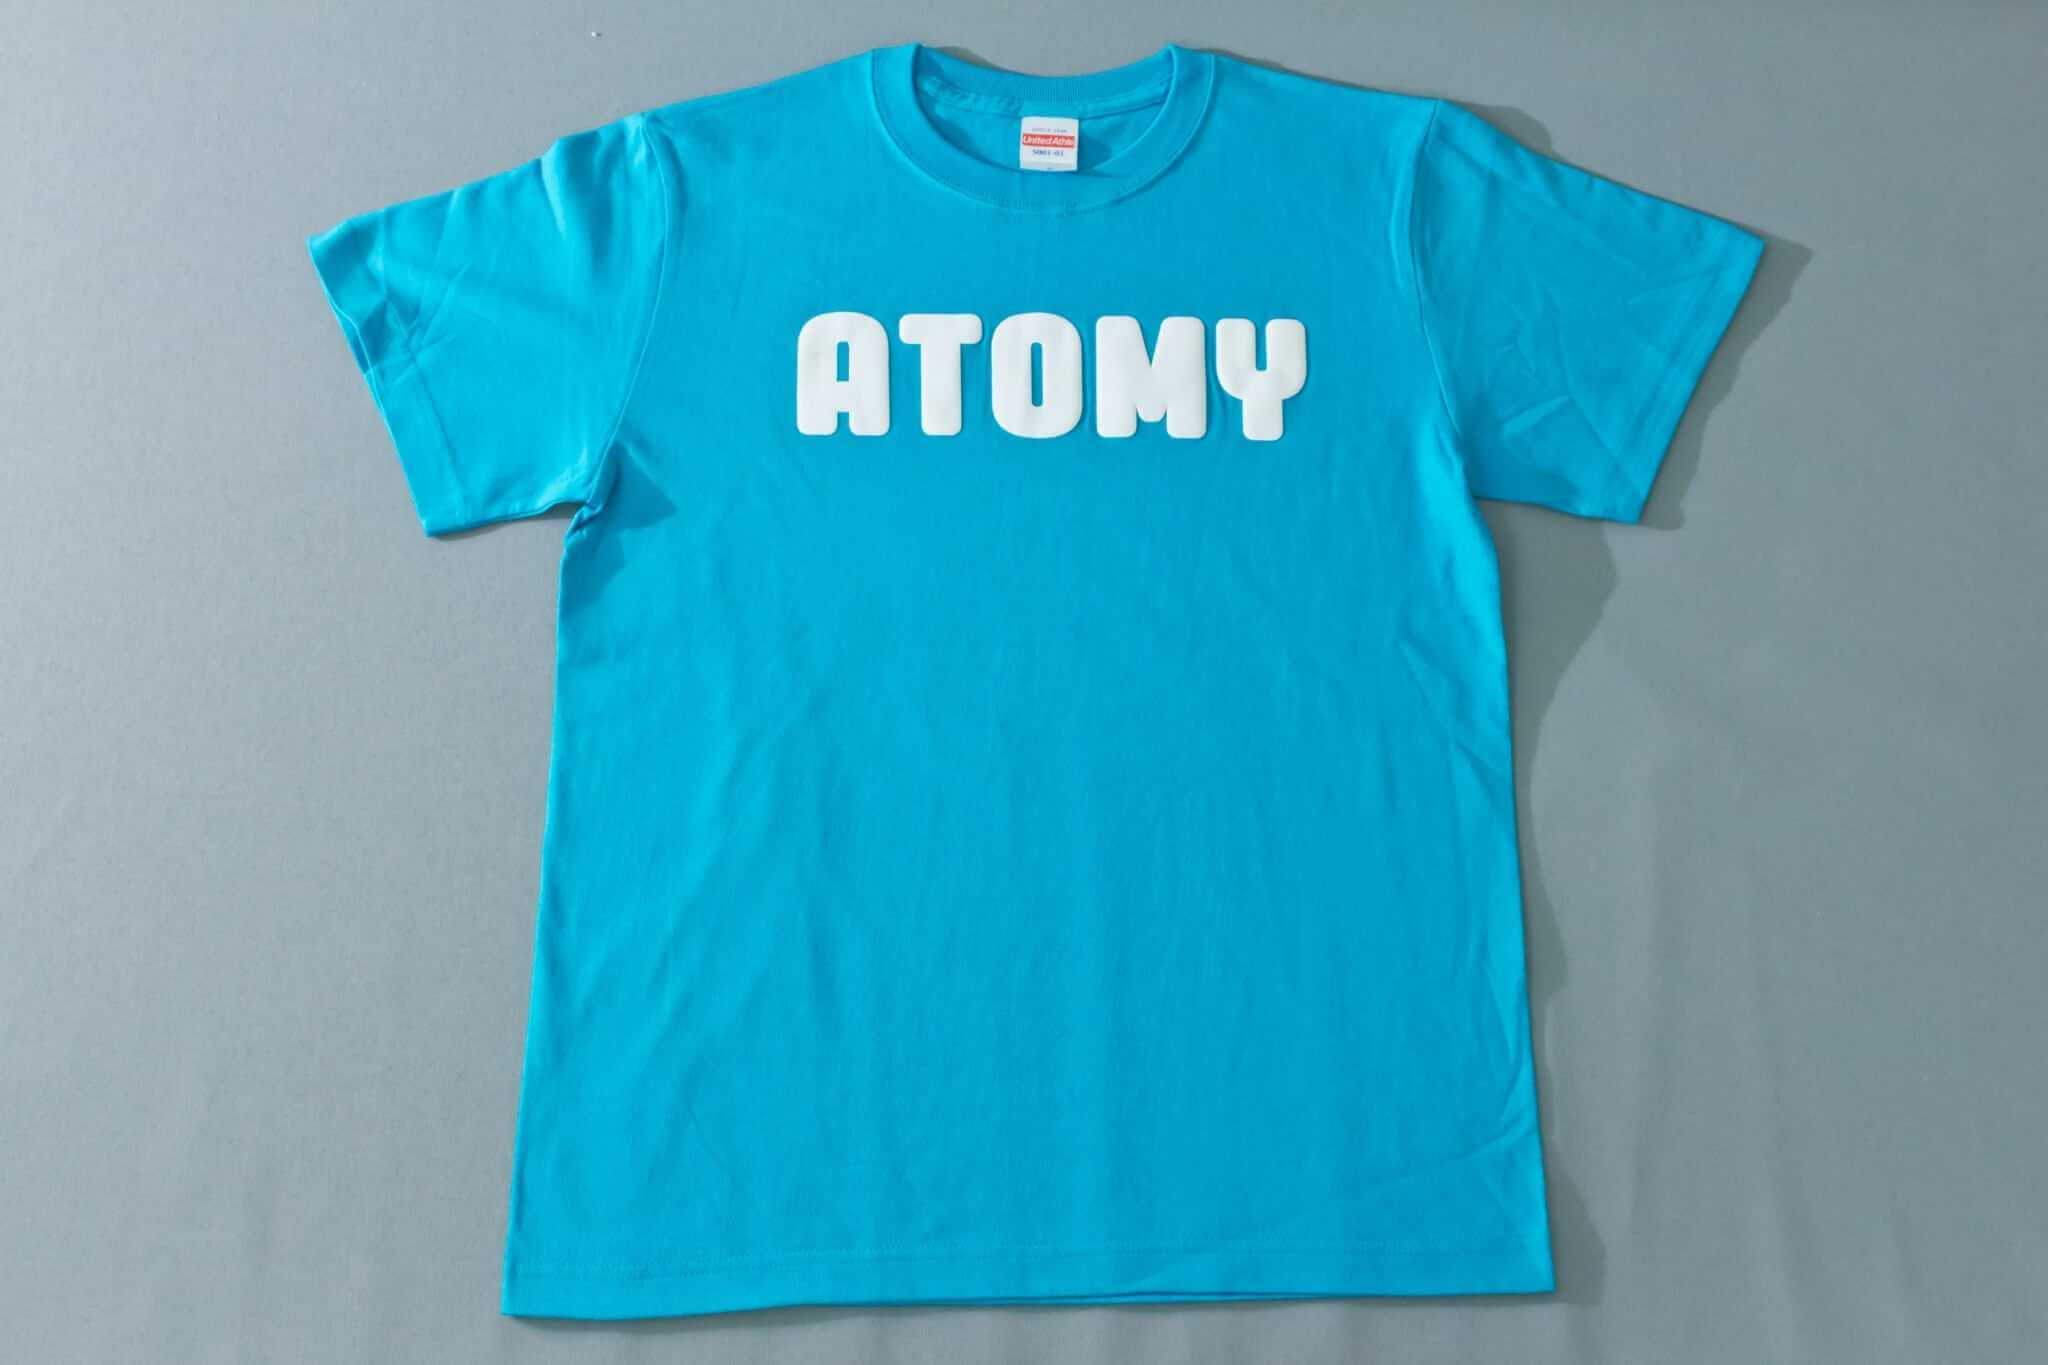 艾多美(ATOMY) 團體T 款式2的第1張圖(客製化公司制服、班服製作、團體服製作等示意或作品圖)